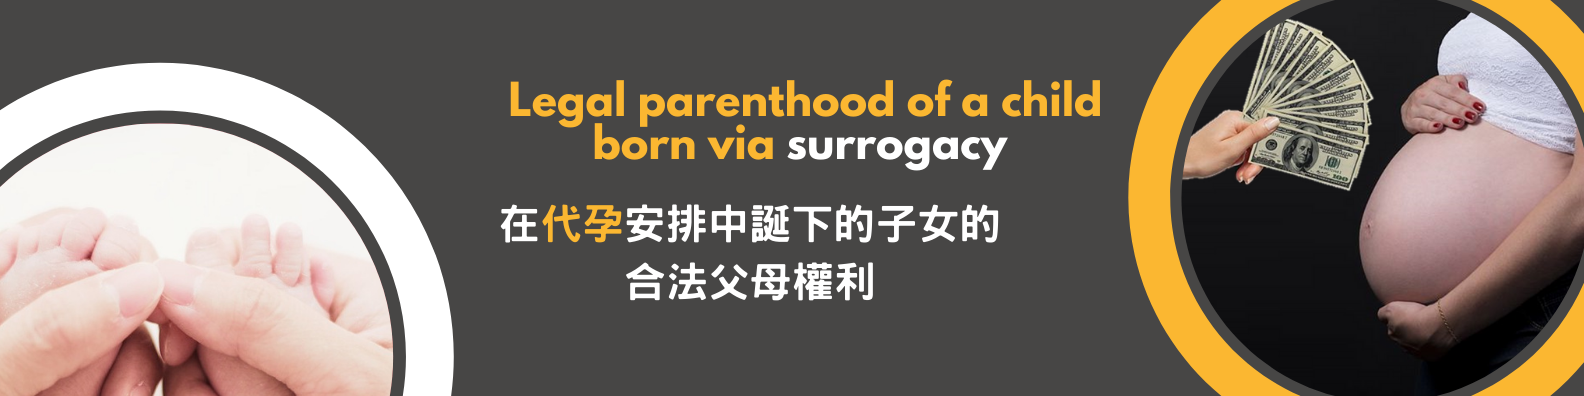 Legal parenthood of a child born via surrogacy